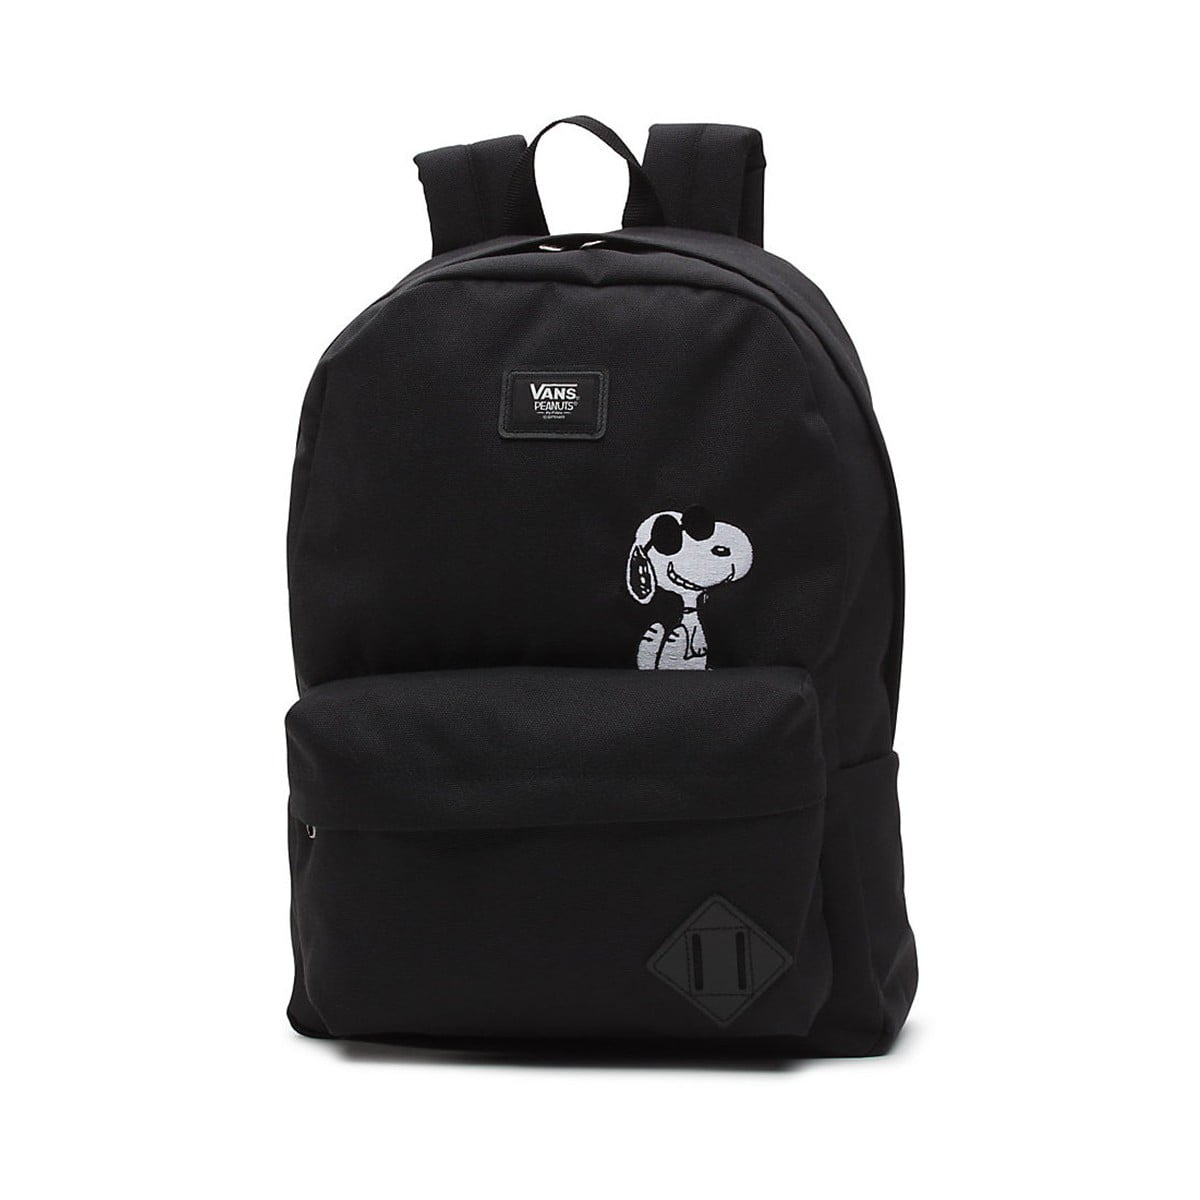 Forblive Umulig Svarende til Vans Peanuts OTW Old Skool II Backpack (Black) Snoopy Peanuts Book Bag -  Walmart.com